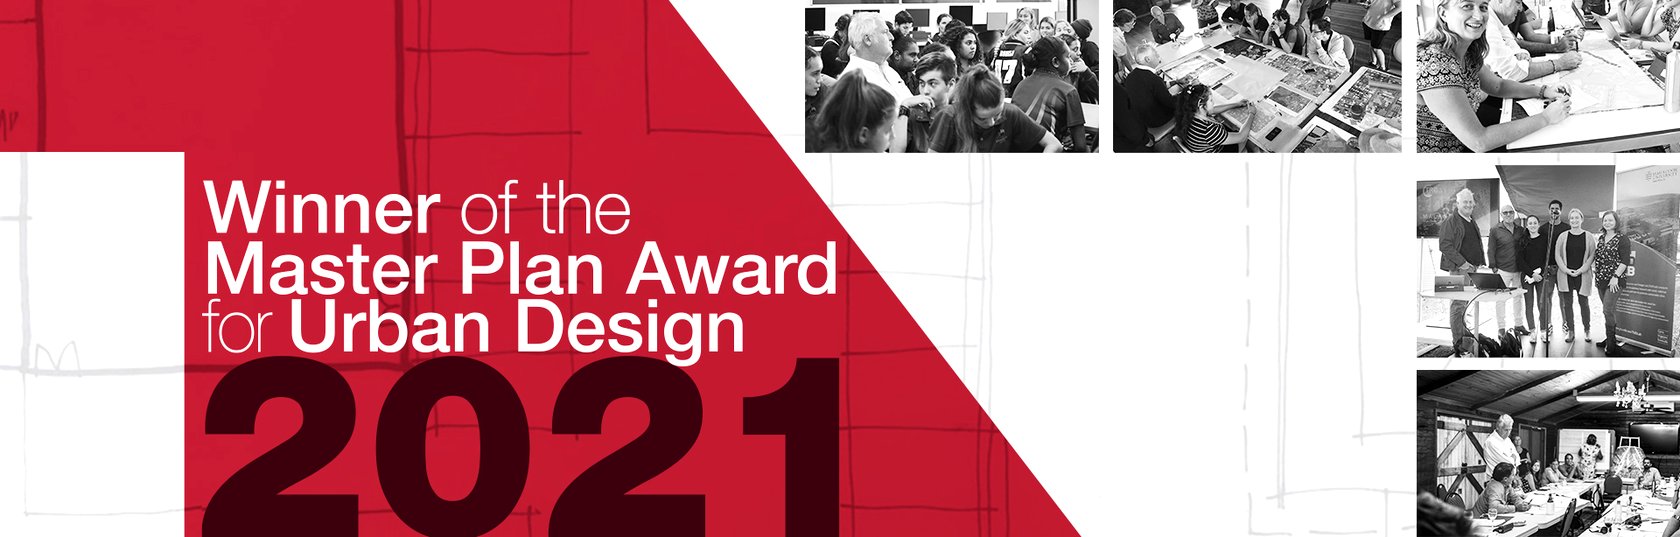 Winner of the Master Plan Award by the Minister's Award for Urban Design (Jul 2021)